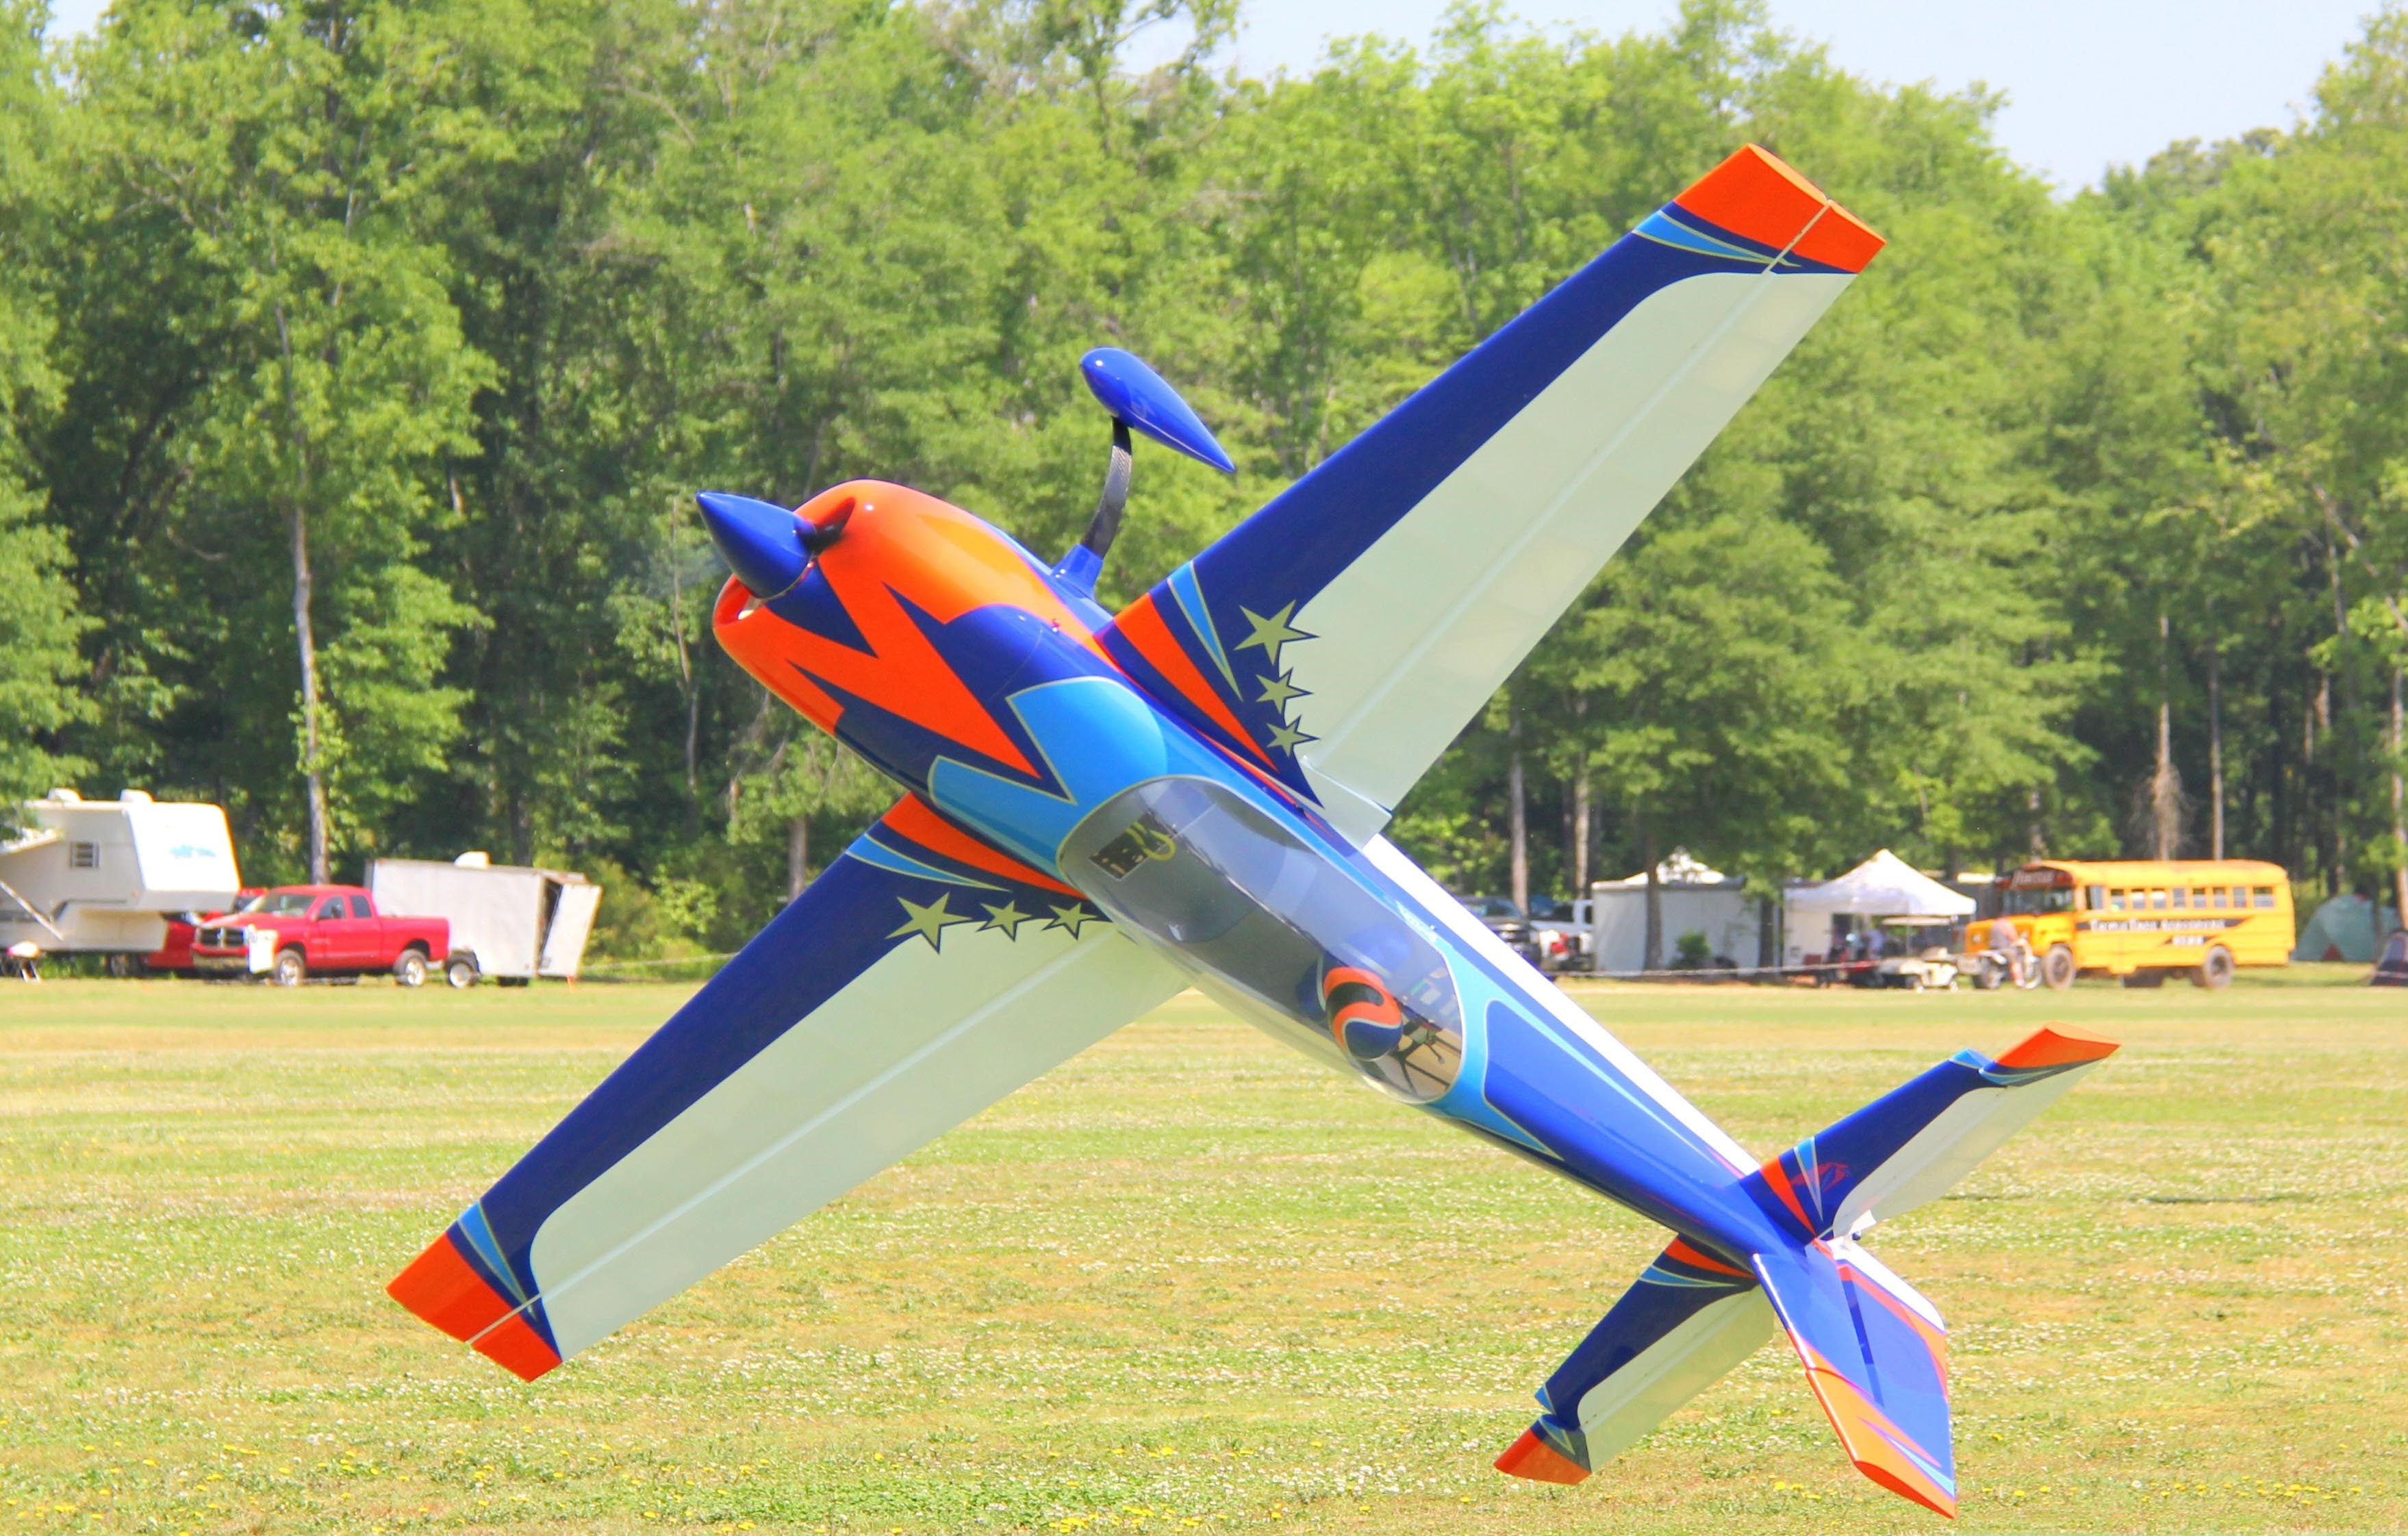 Extreme Flight Extra 300 V2 104" - Orange/Blue